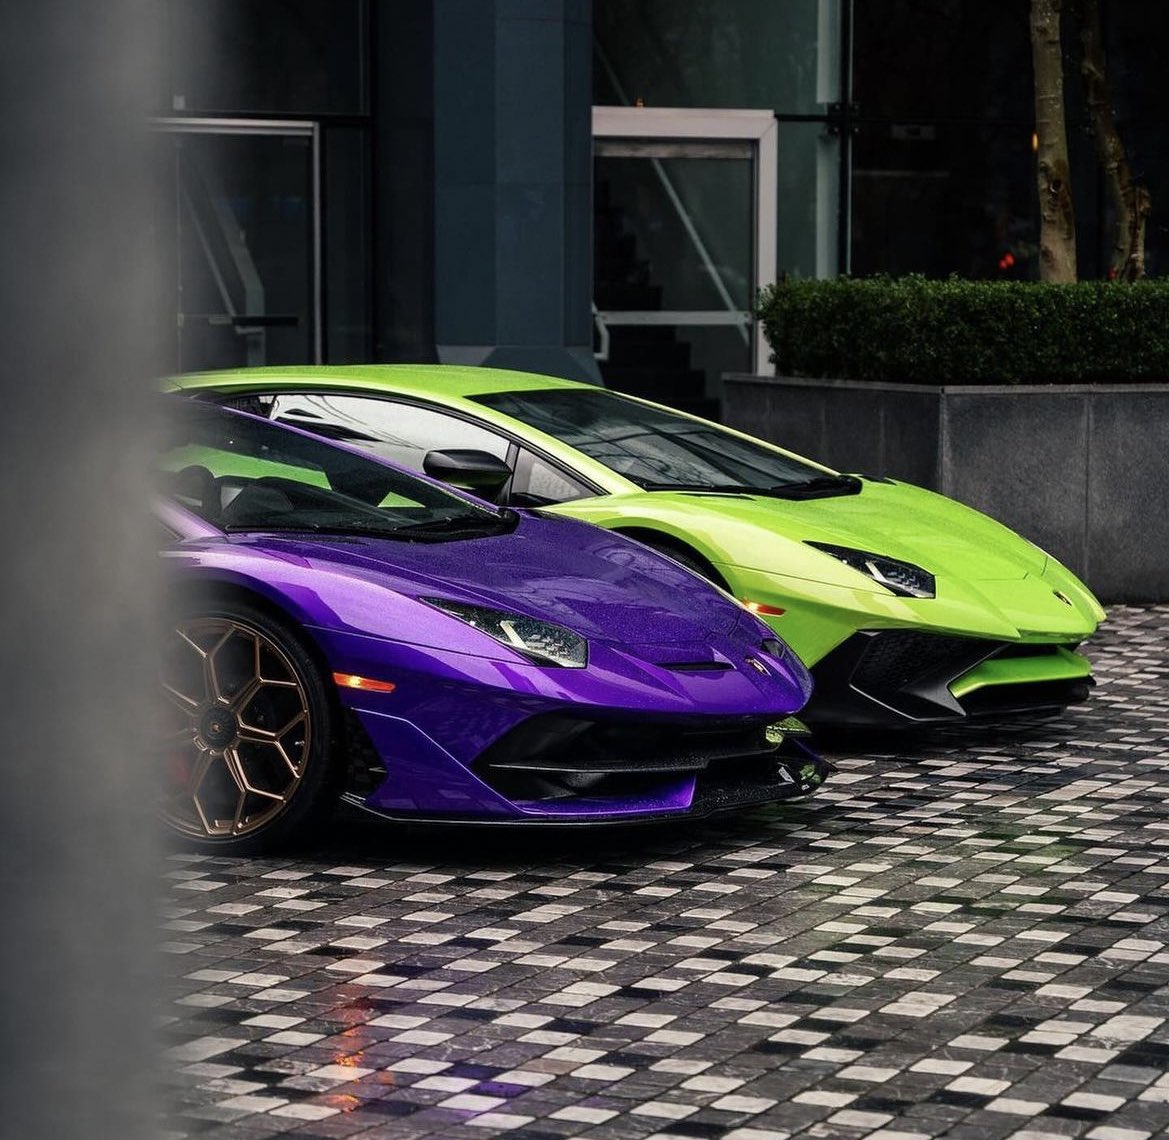 Green SV or purple SVJ ??